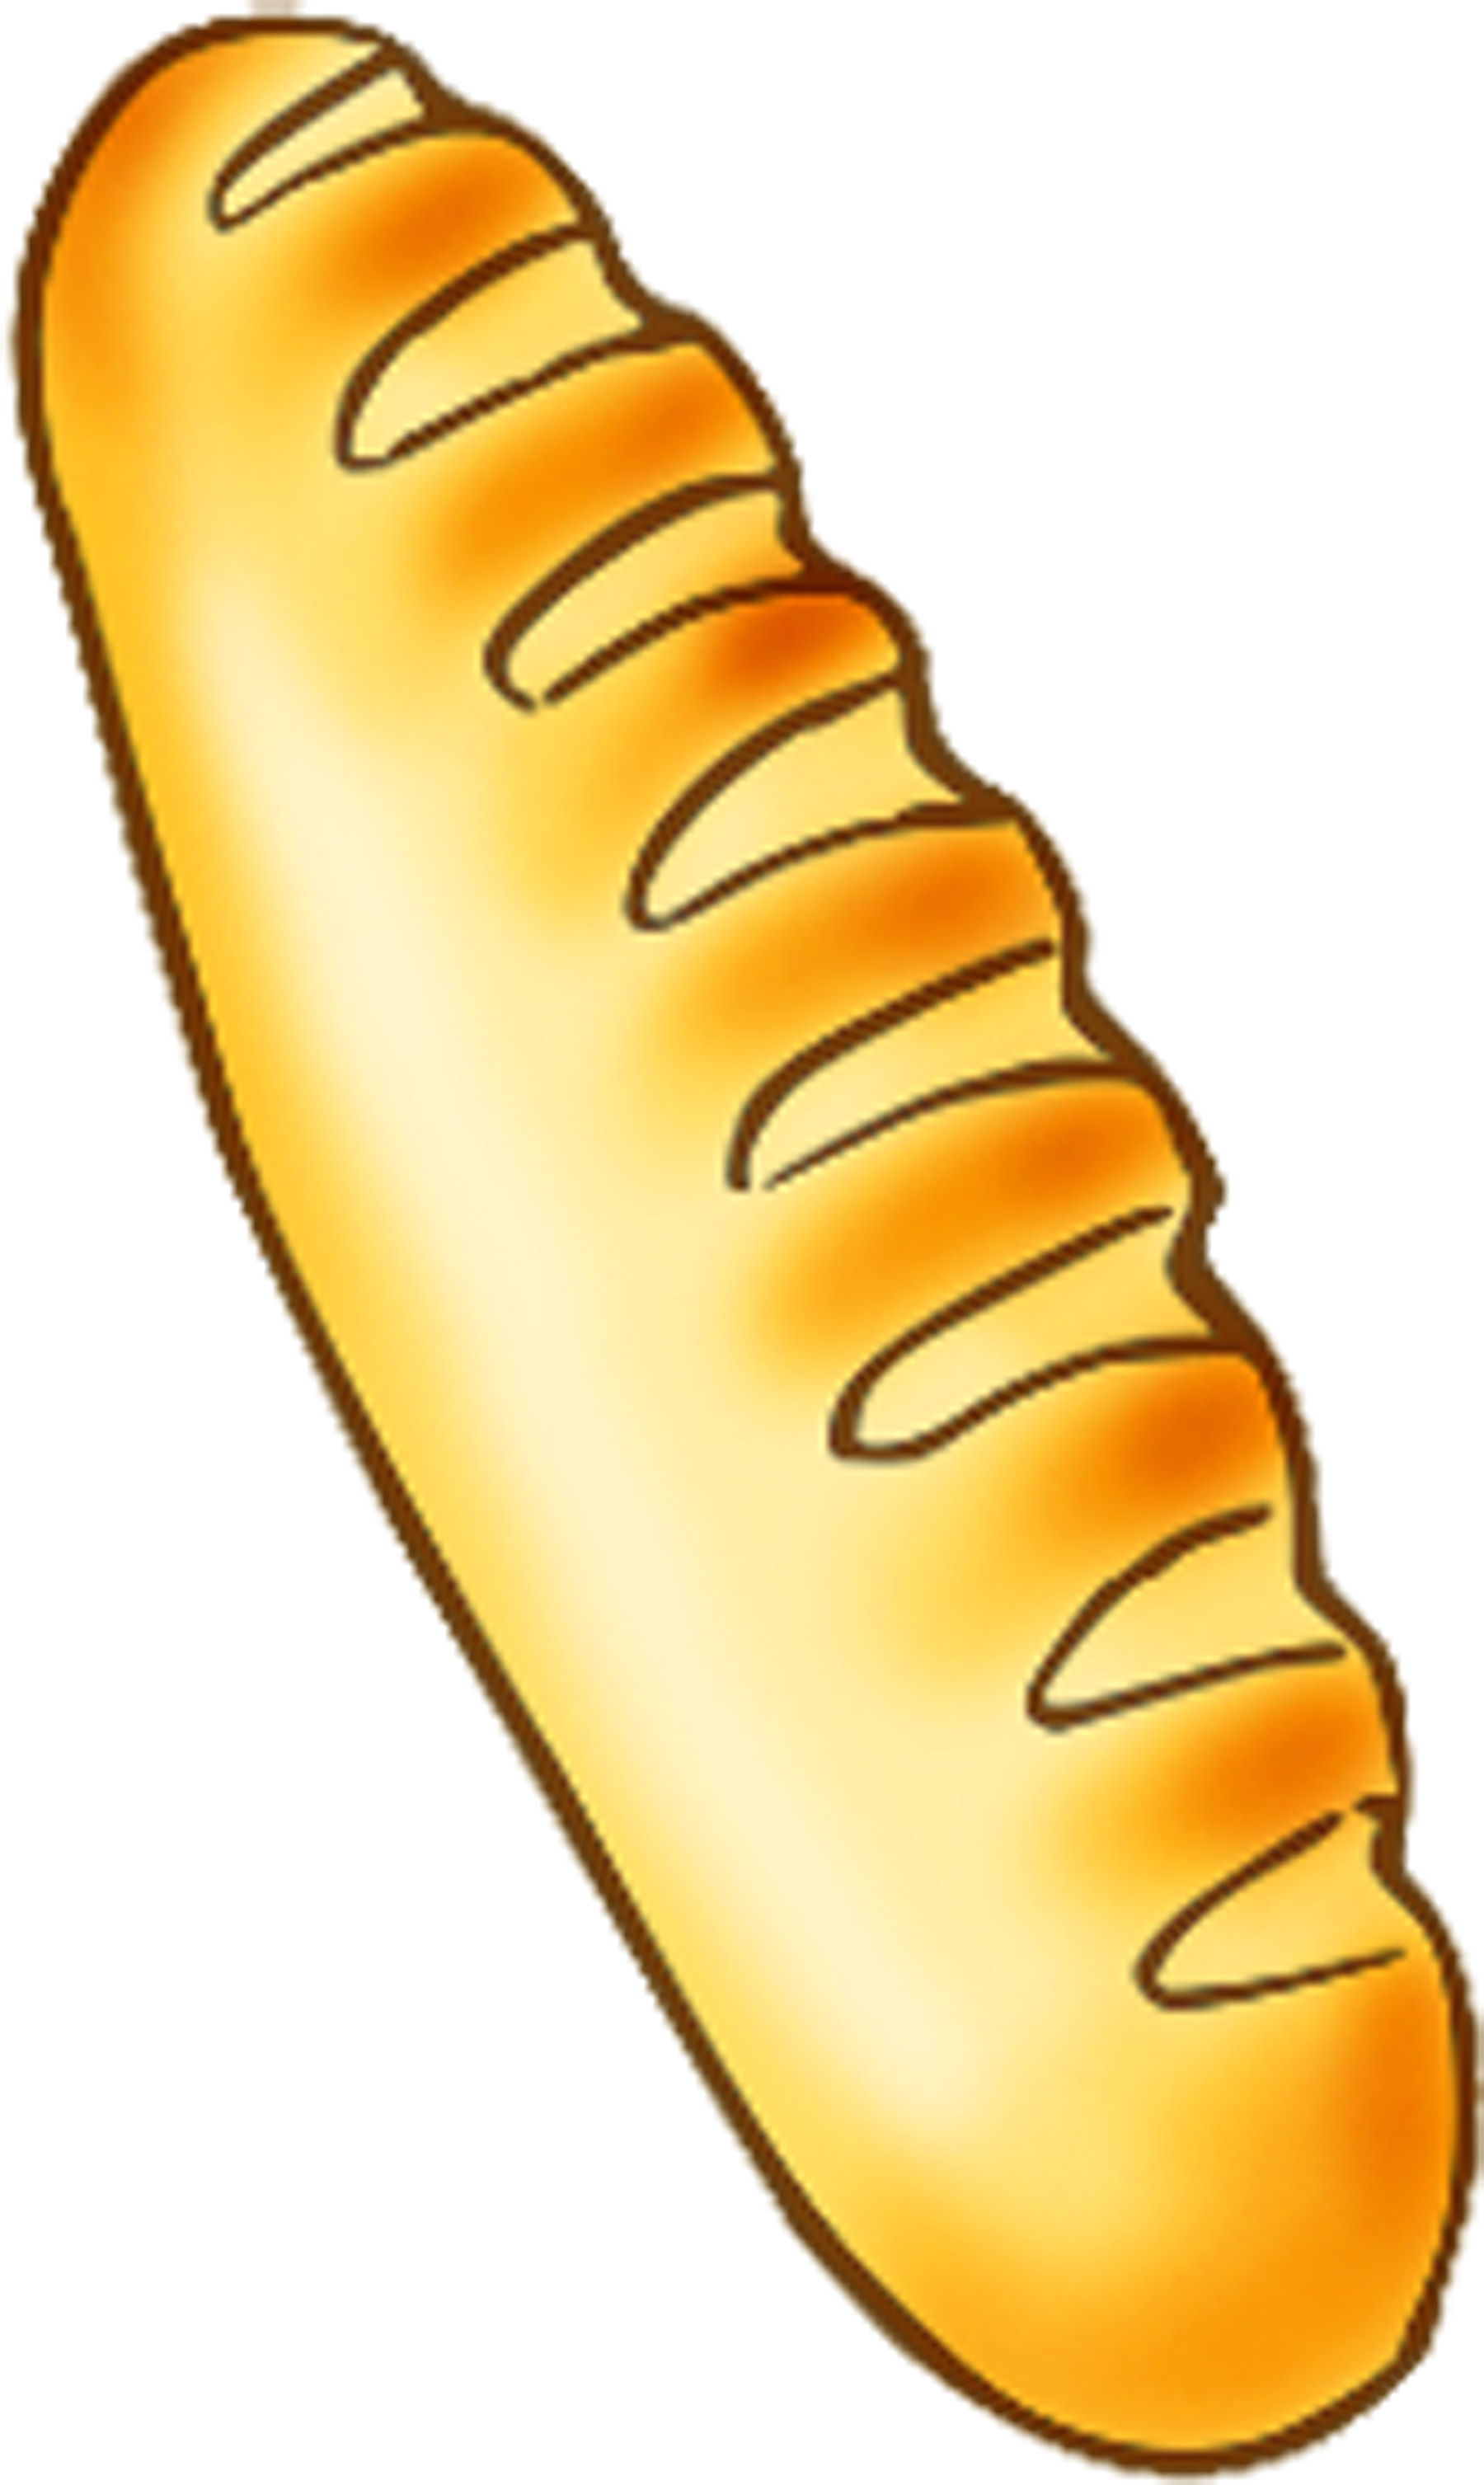 French bread clip art.